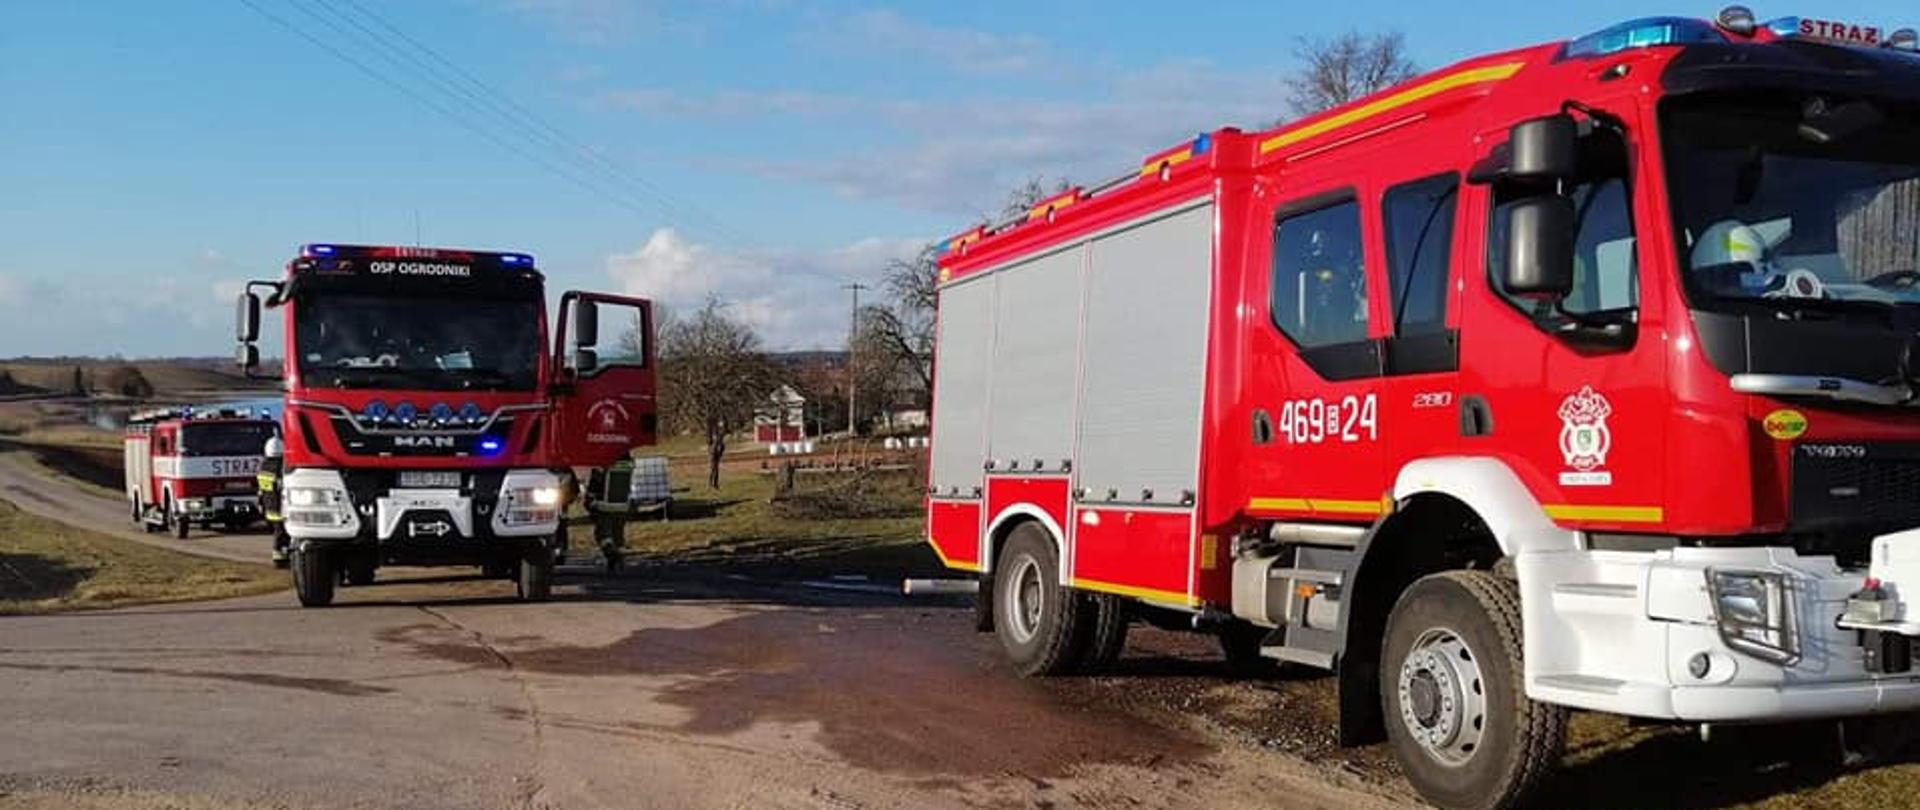 działania strażaków podczas pożaru stodoły w miejscowości Krejwińce